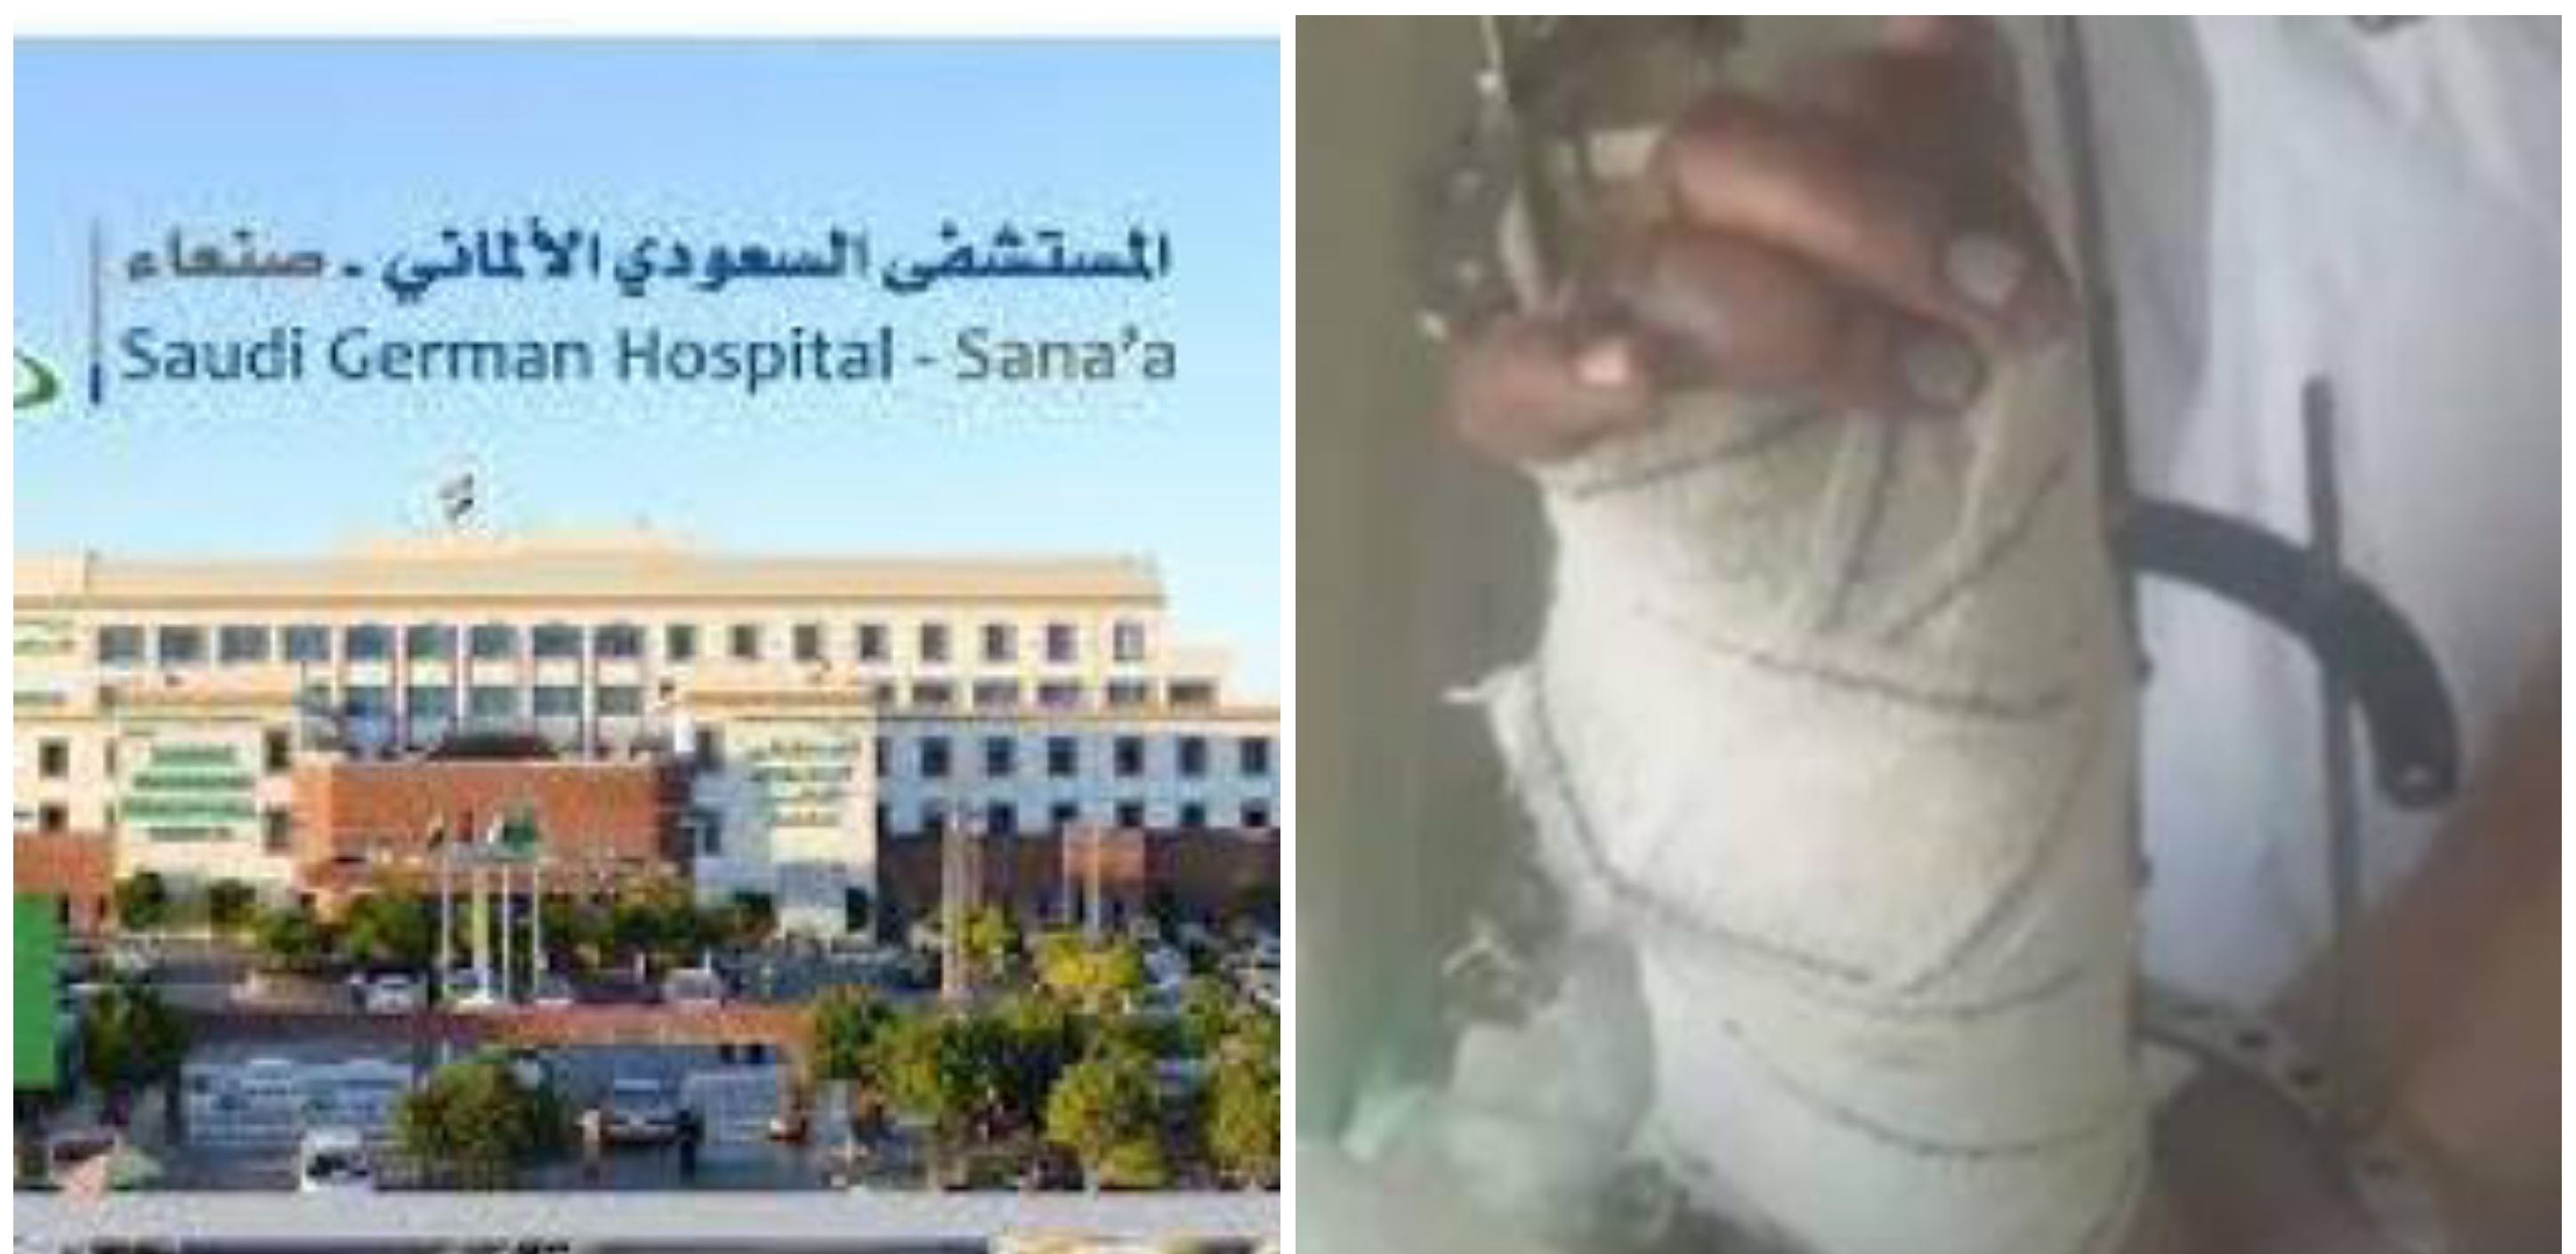 لأول مرة في اليمن .. فريق طبي ينجح في زراعة يد مبتورة بالمستشفى السعودي الألماني بصنعاء (صورة)..